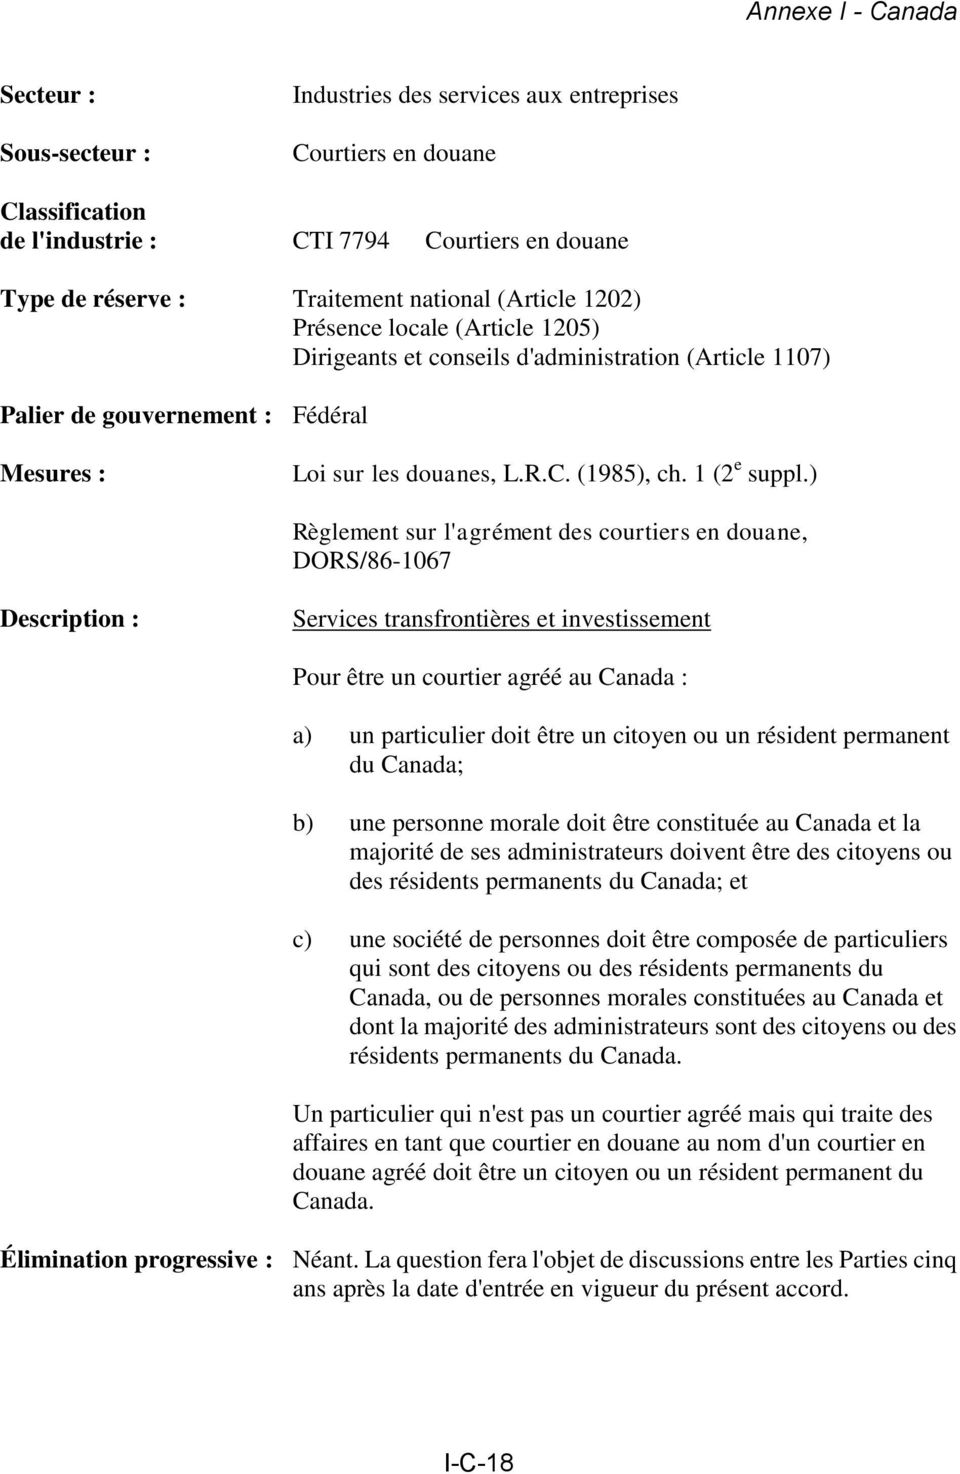 ) Règlement sur l'agrément des courtiers en douane, DORS/86-1067 Services transfrontières et investissement Pour être un courtier agréé au Canada : a) un particulier doit être un citoyen ou un